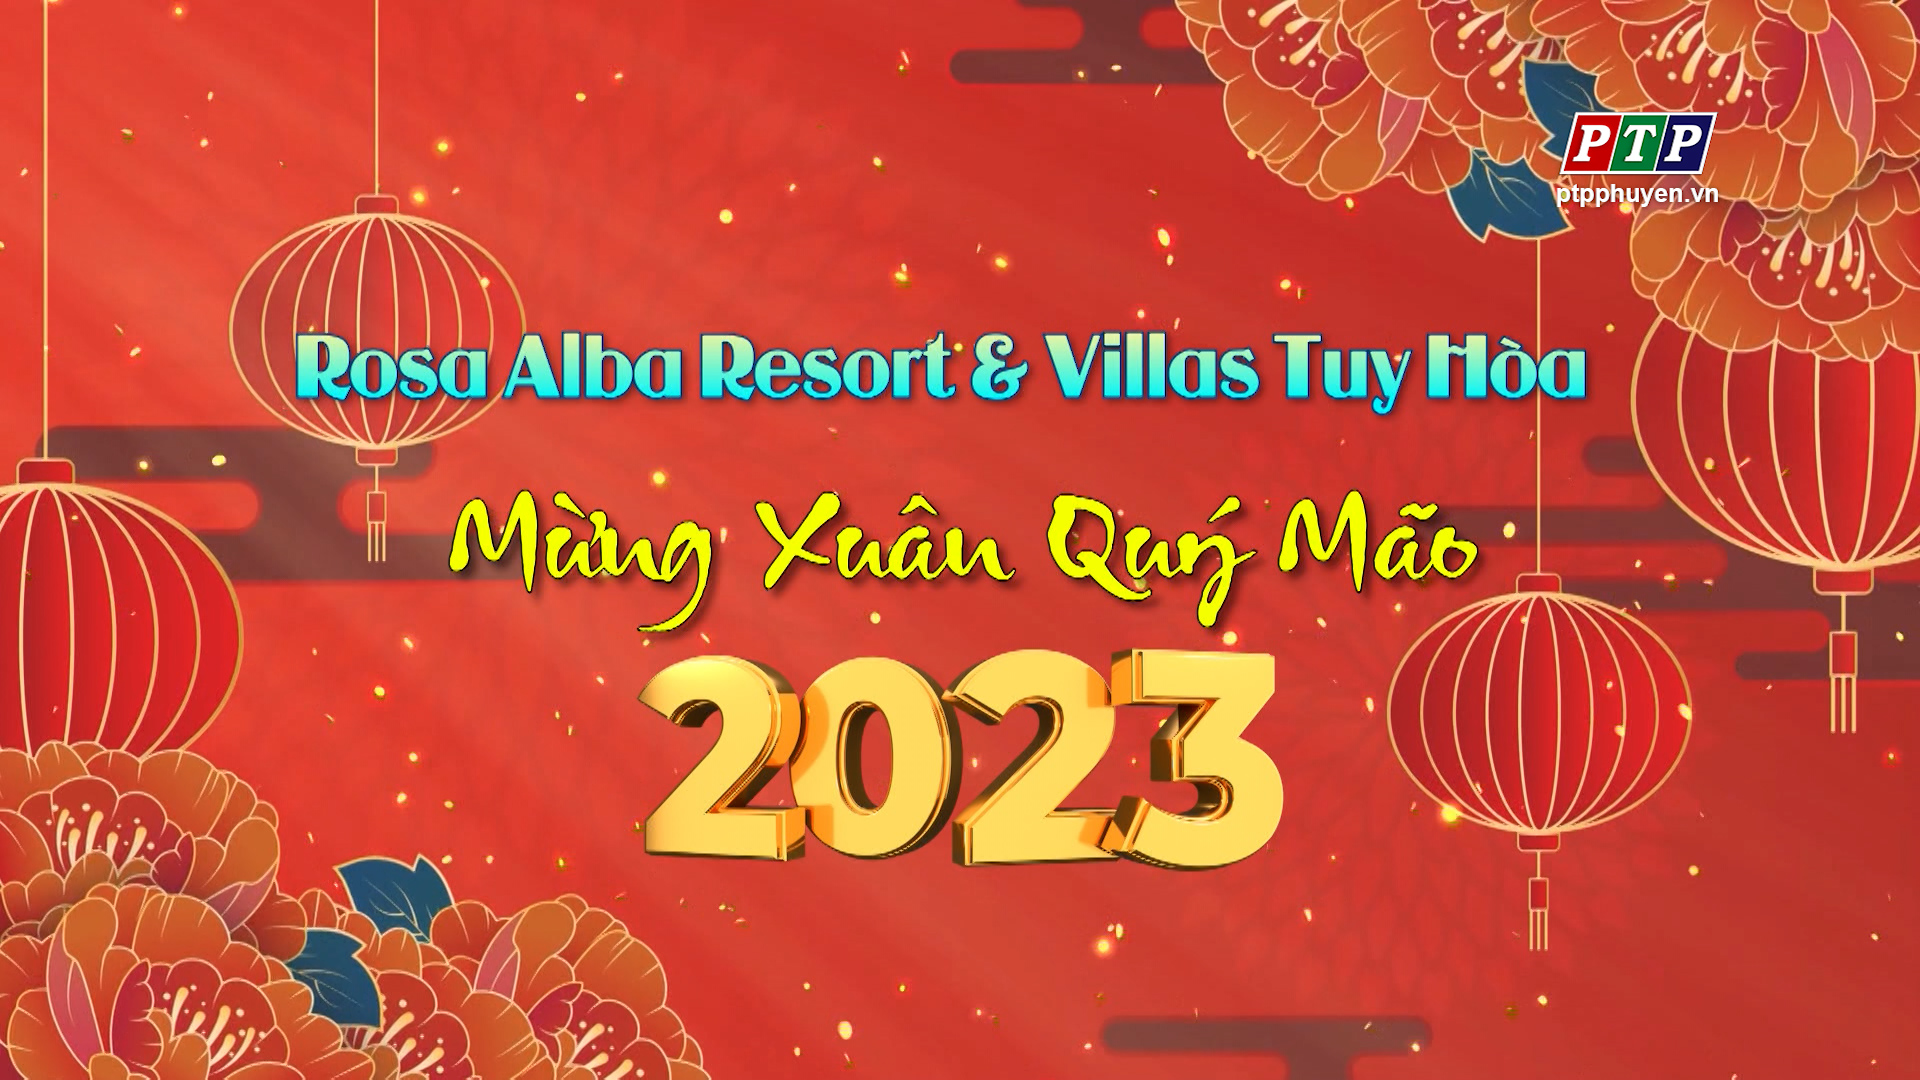 Rosa Alba Resort & Villas Tuy Hoà Chúc Mừng Năm Mới 2023